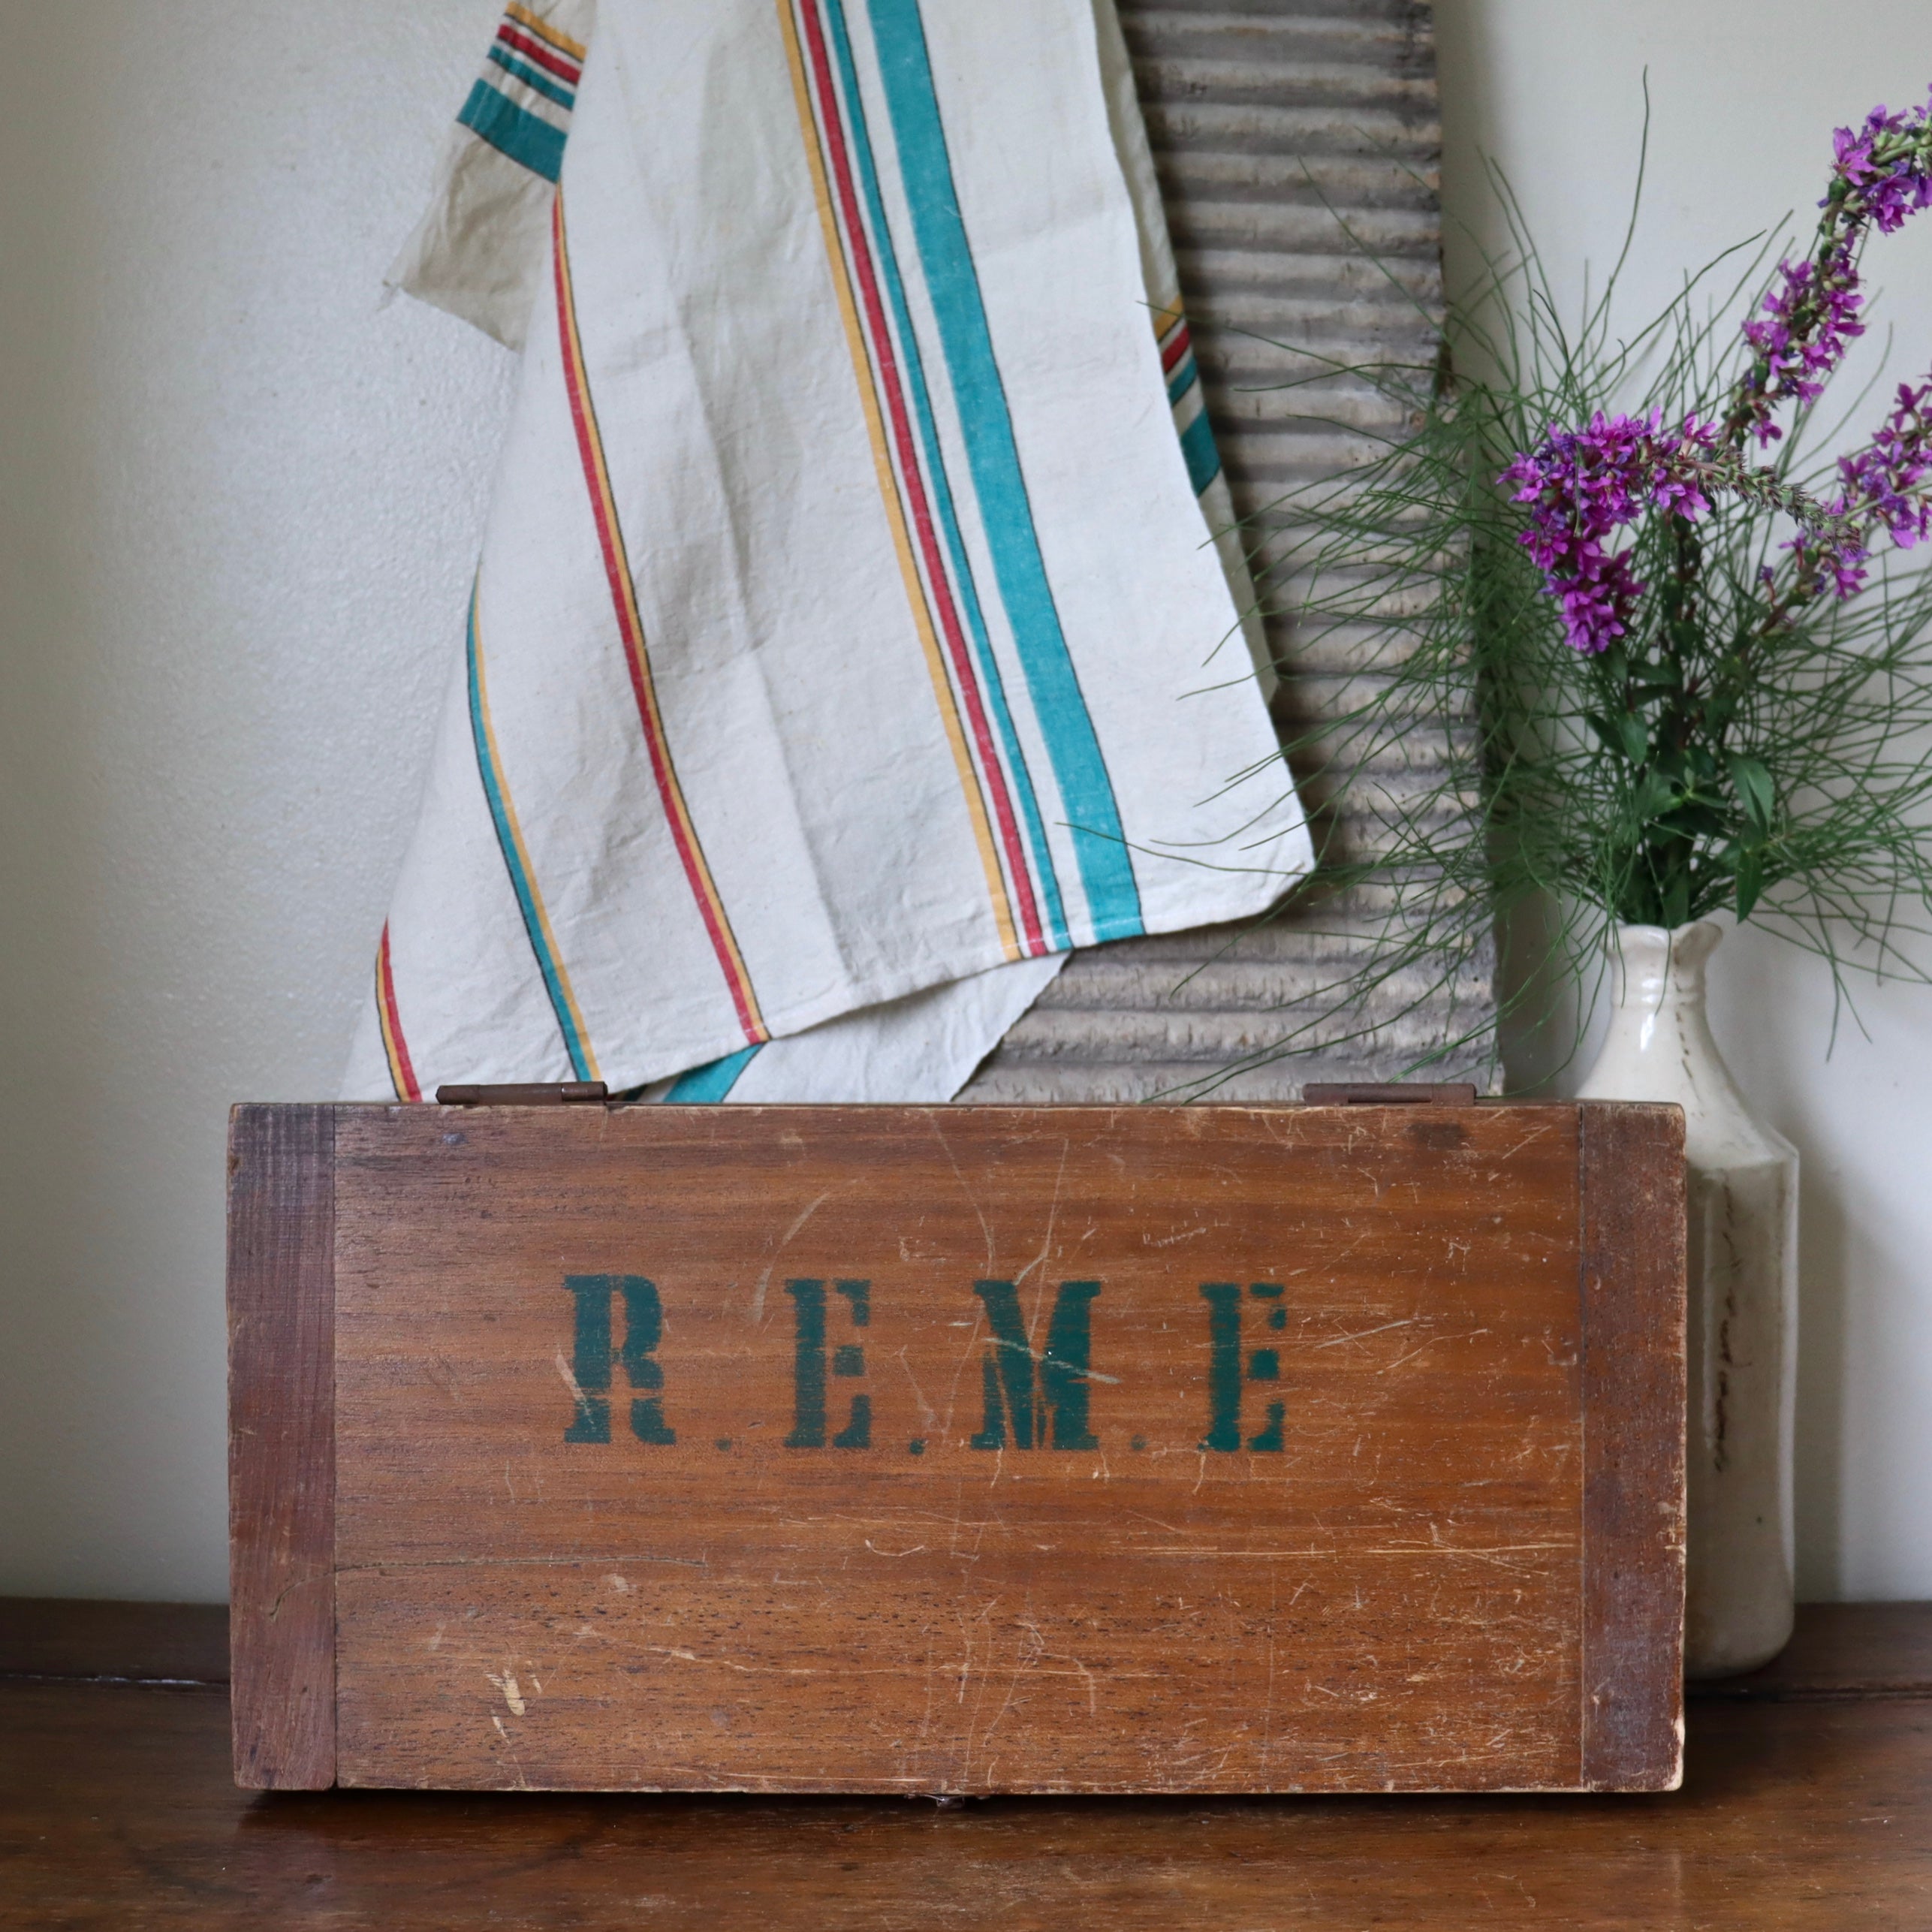 Antique Wooden Military R.E.M.E Box